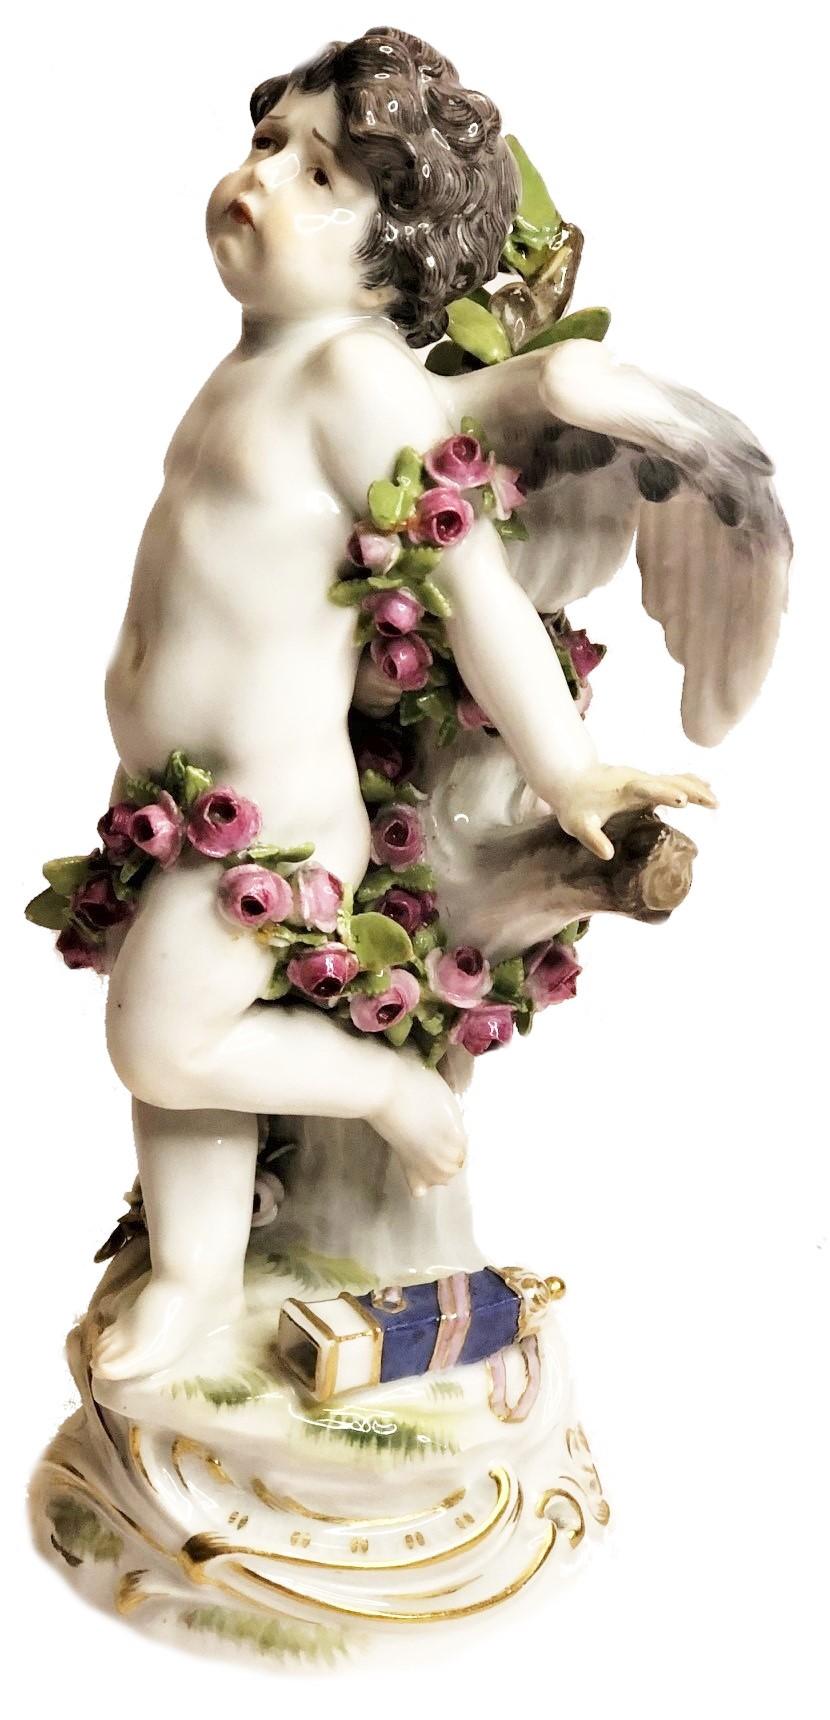 Diese außergewöhnlich schöne, in bester Meißner Tradition gefertigte Statuette zeigt einen Amor mit leidendem Gesichtsausdruck und einem leeren Köcher mit Pfeilen zu seinen Füßen. Diese Komposition ruft beim Betrachter sofort ein eindeutiges Gefühl